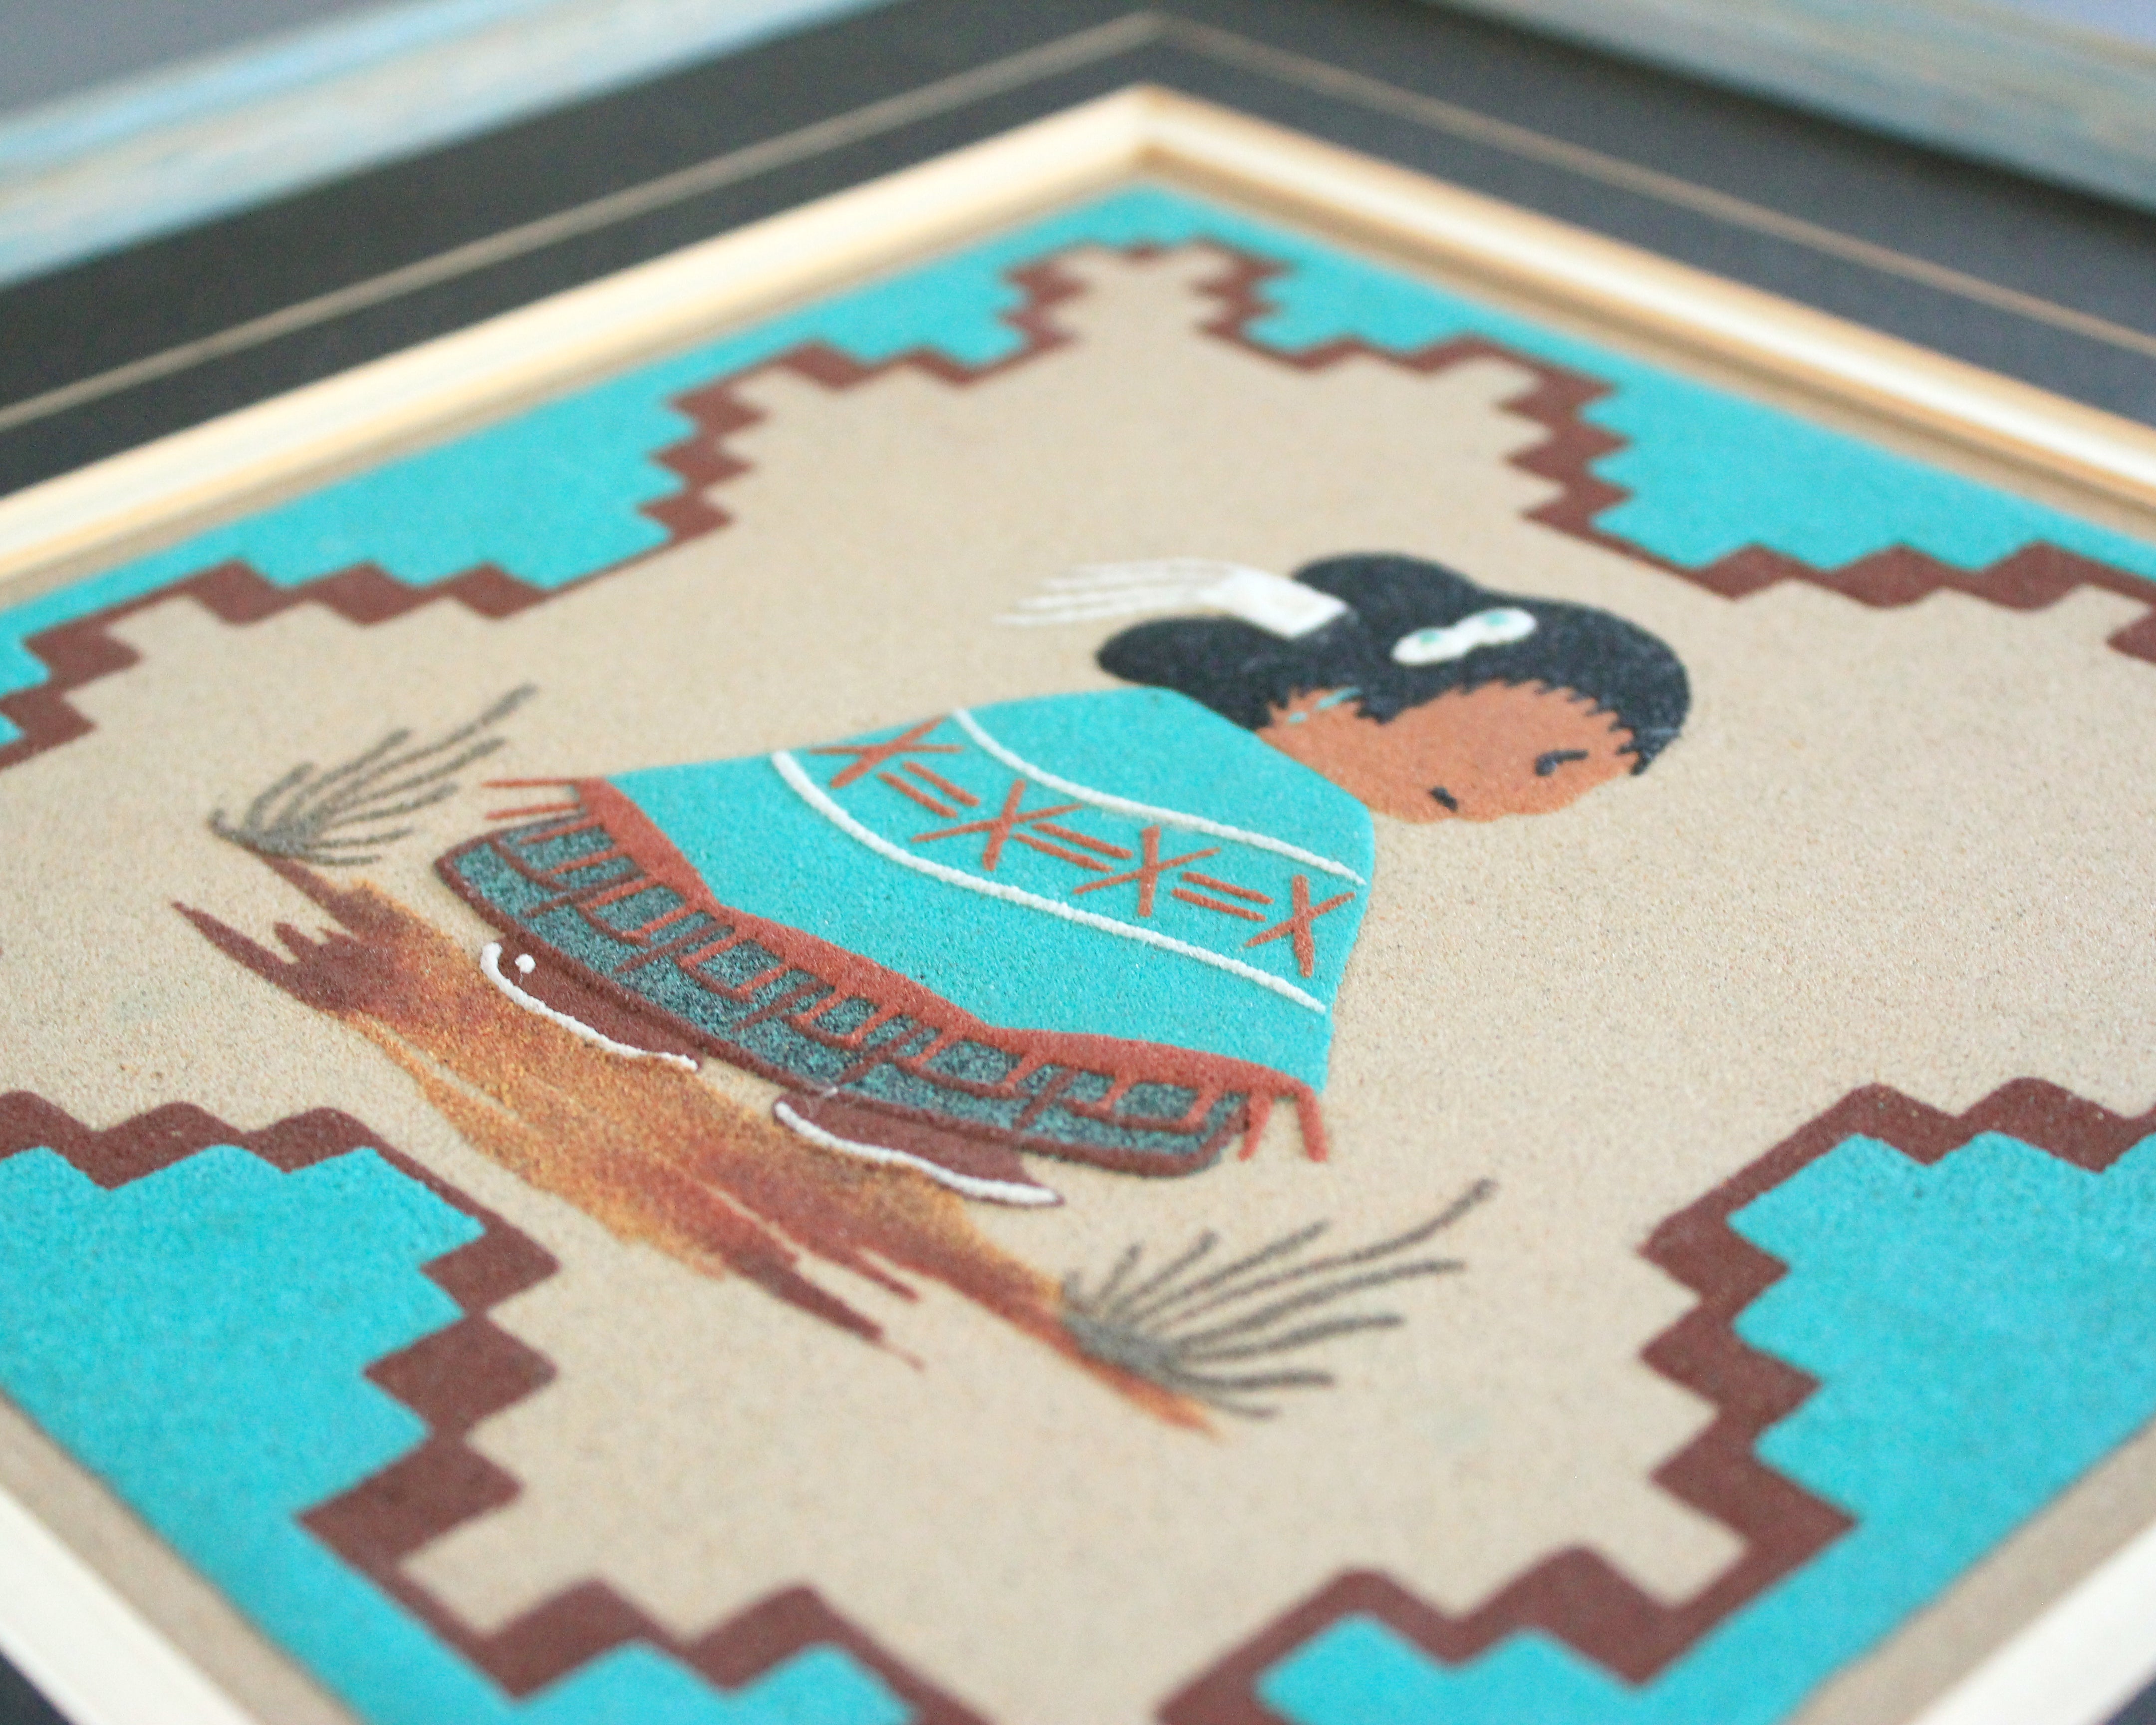 Turquoise sand paintings by navajo artist Roseann Yazzie